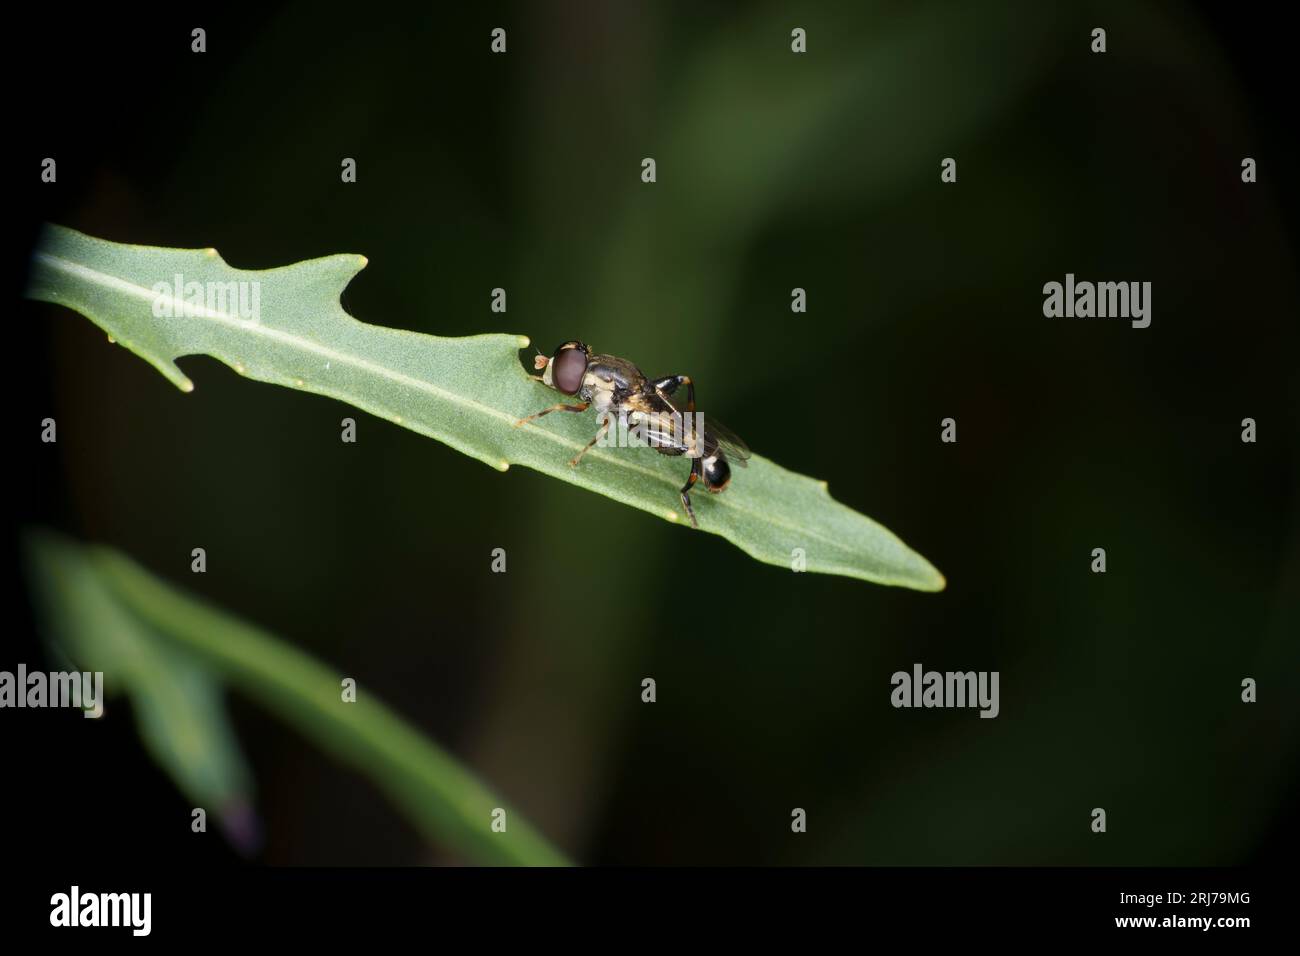 Syritta pipiens famille Syrphidae Genus Syritta épais à pattes de mouche aérienne mouche nature sauvage fond d'écran d'insecte Banque D'Images